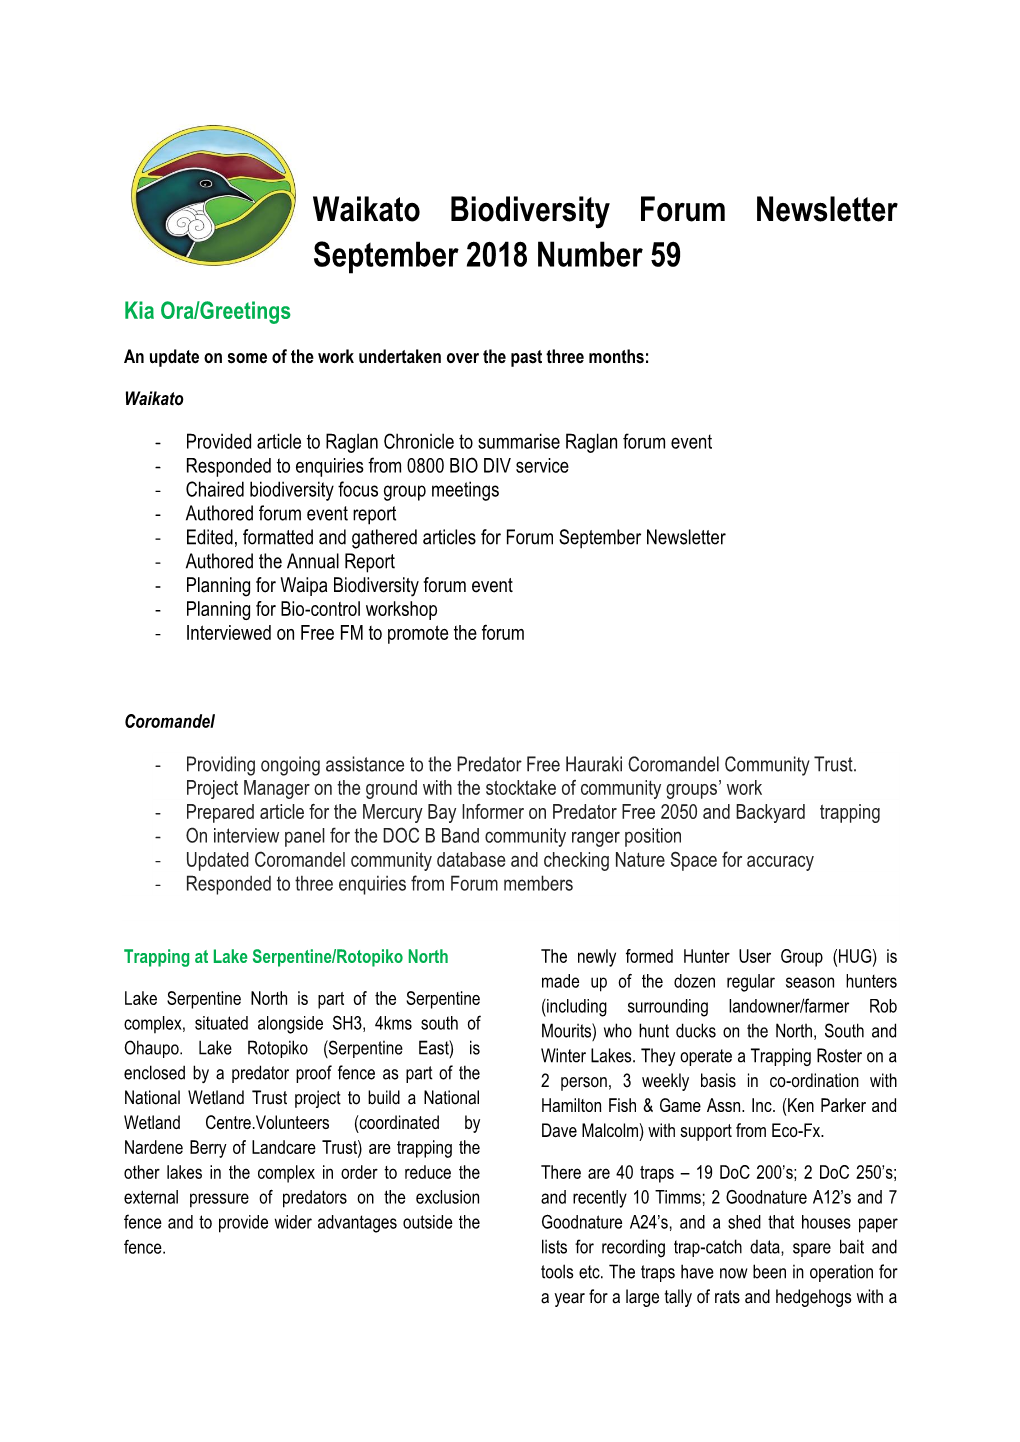 Waikato Biodiversity Forum Newsletter September 2018 Number 59